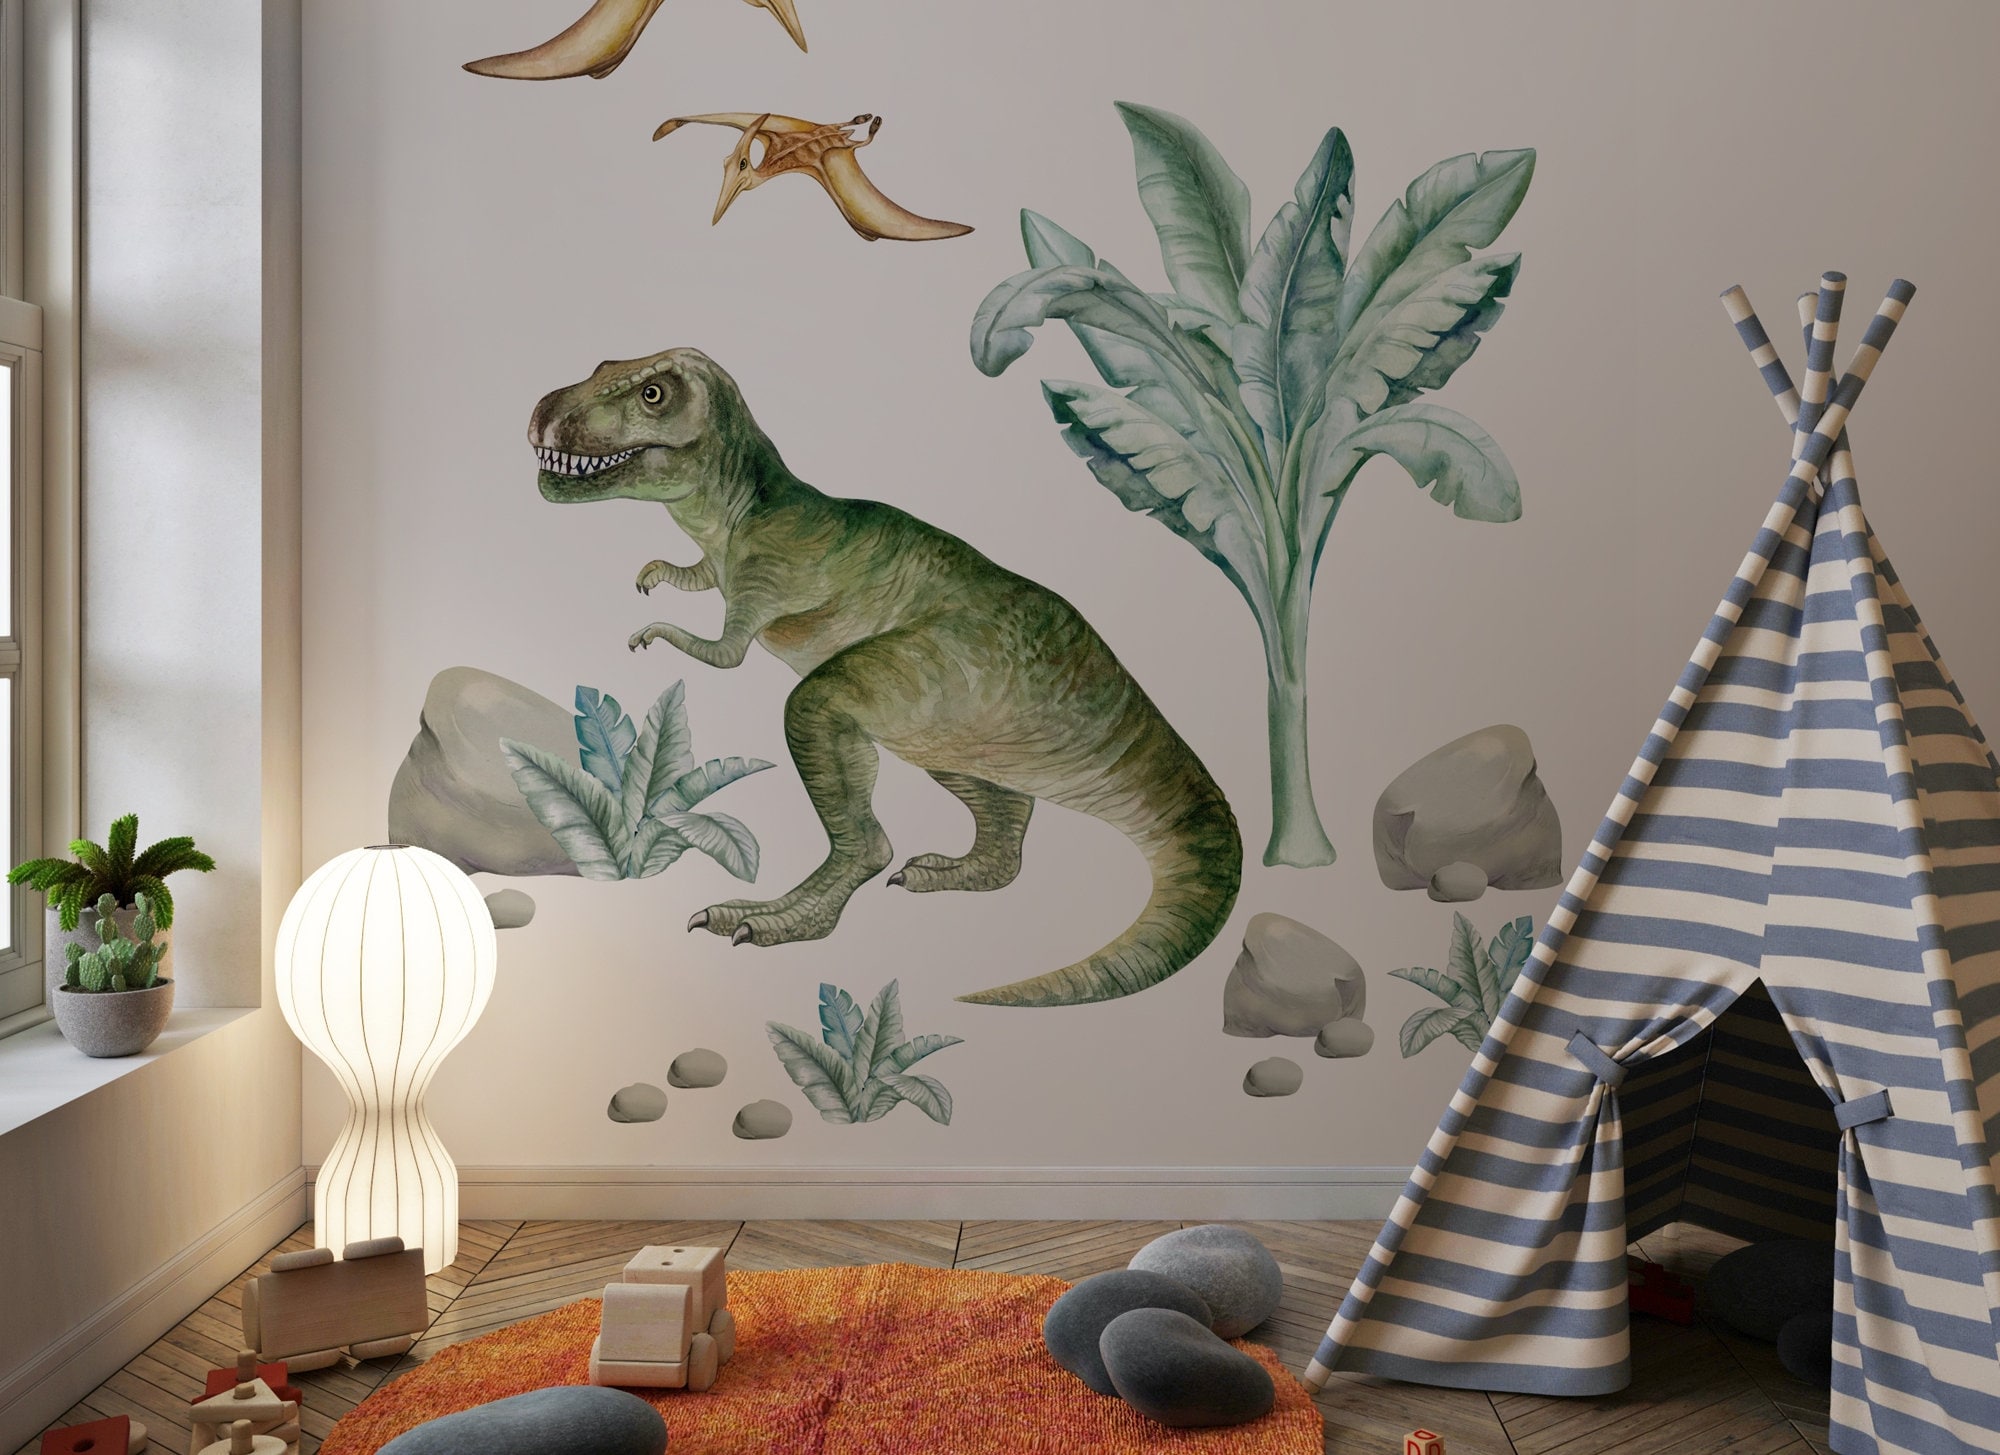 Décalcomanie murale dinosaure pour enfants, Jurassic Park, autocollant  mural dinosaures Stegosaurus, Parasaurolophus, Diplodocus, Ptérodactyle,  Autocollant Dino -  France